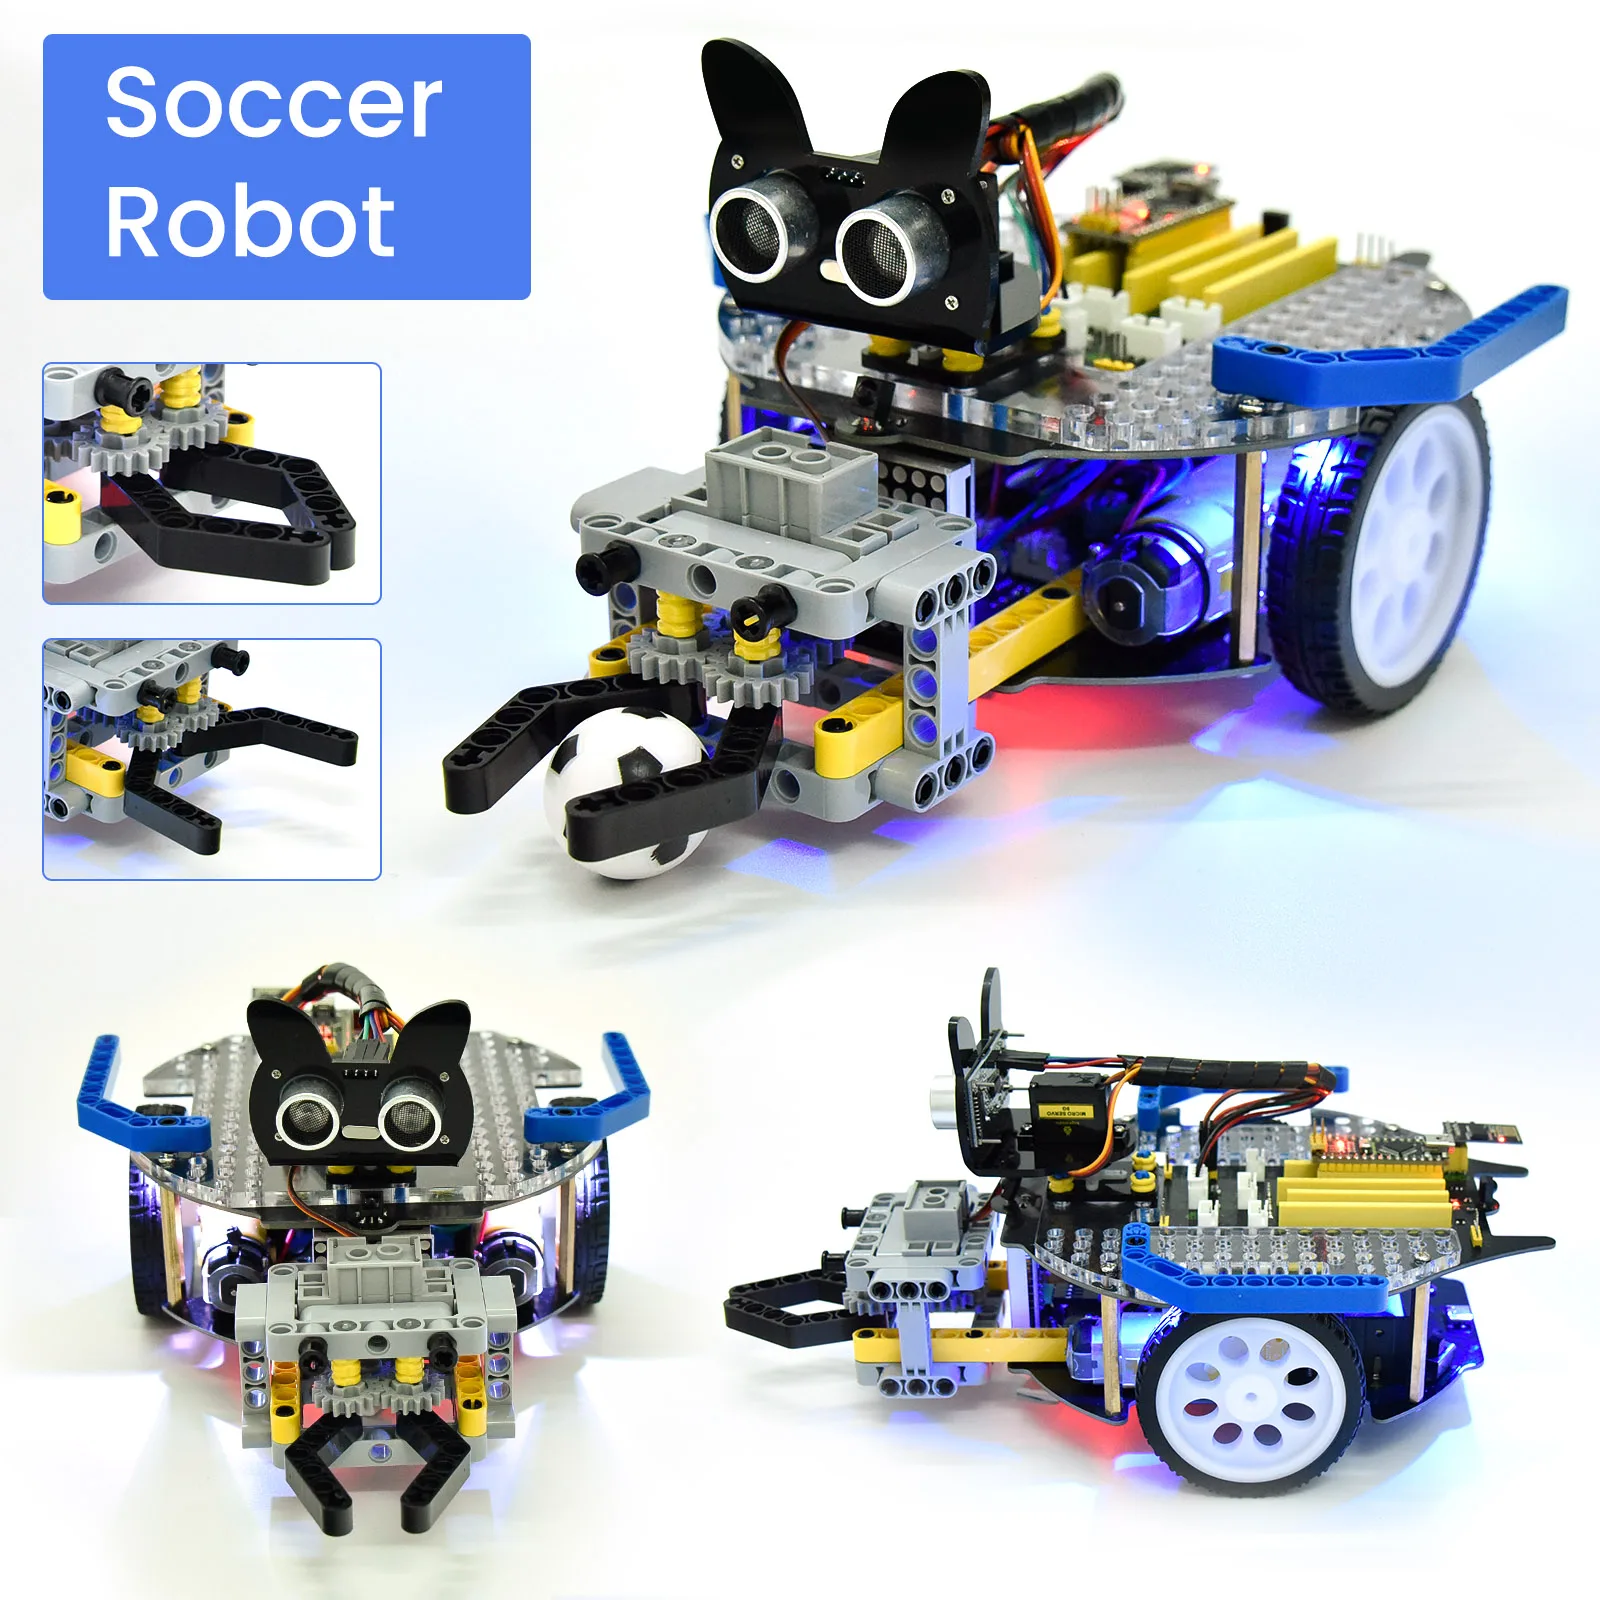 

Keyestudio 3 в 1 робот-автомобиль Beetlebot для Arduino(Raspberry Pi Pico/ESP32), Обучающий набор «сделай сам», совместимый с конструкциями LEGO +